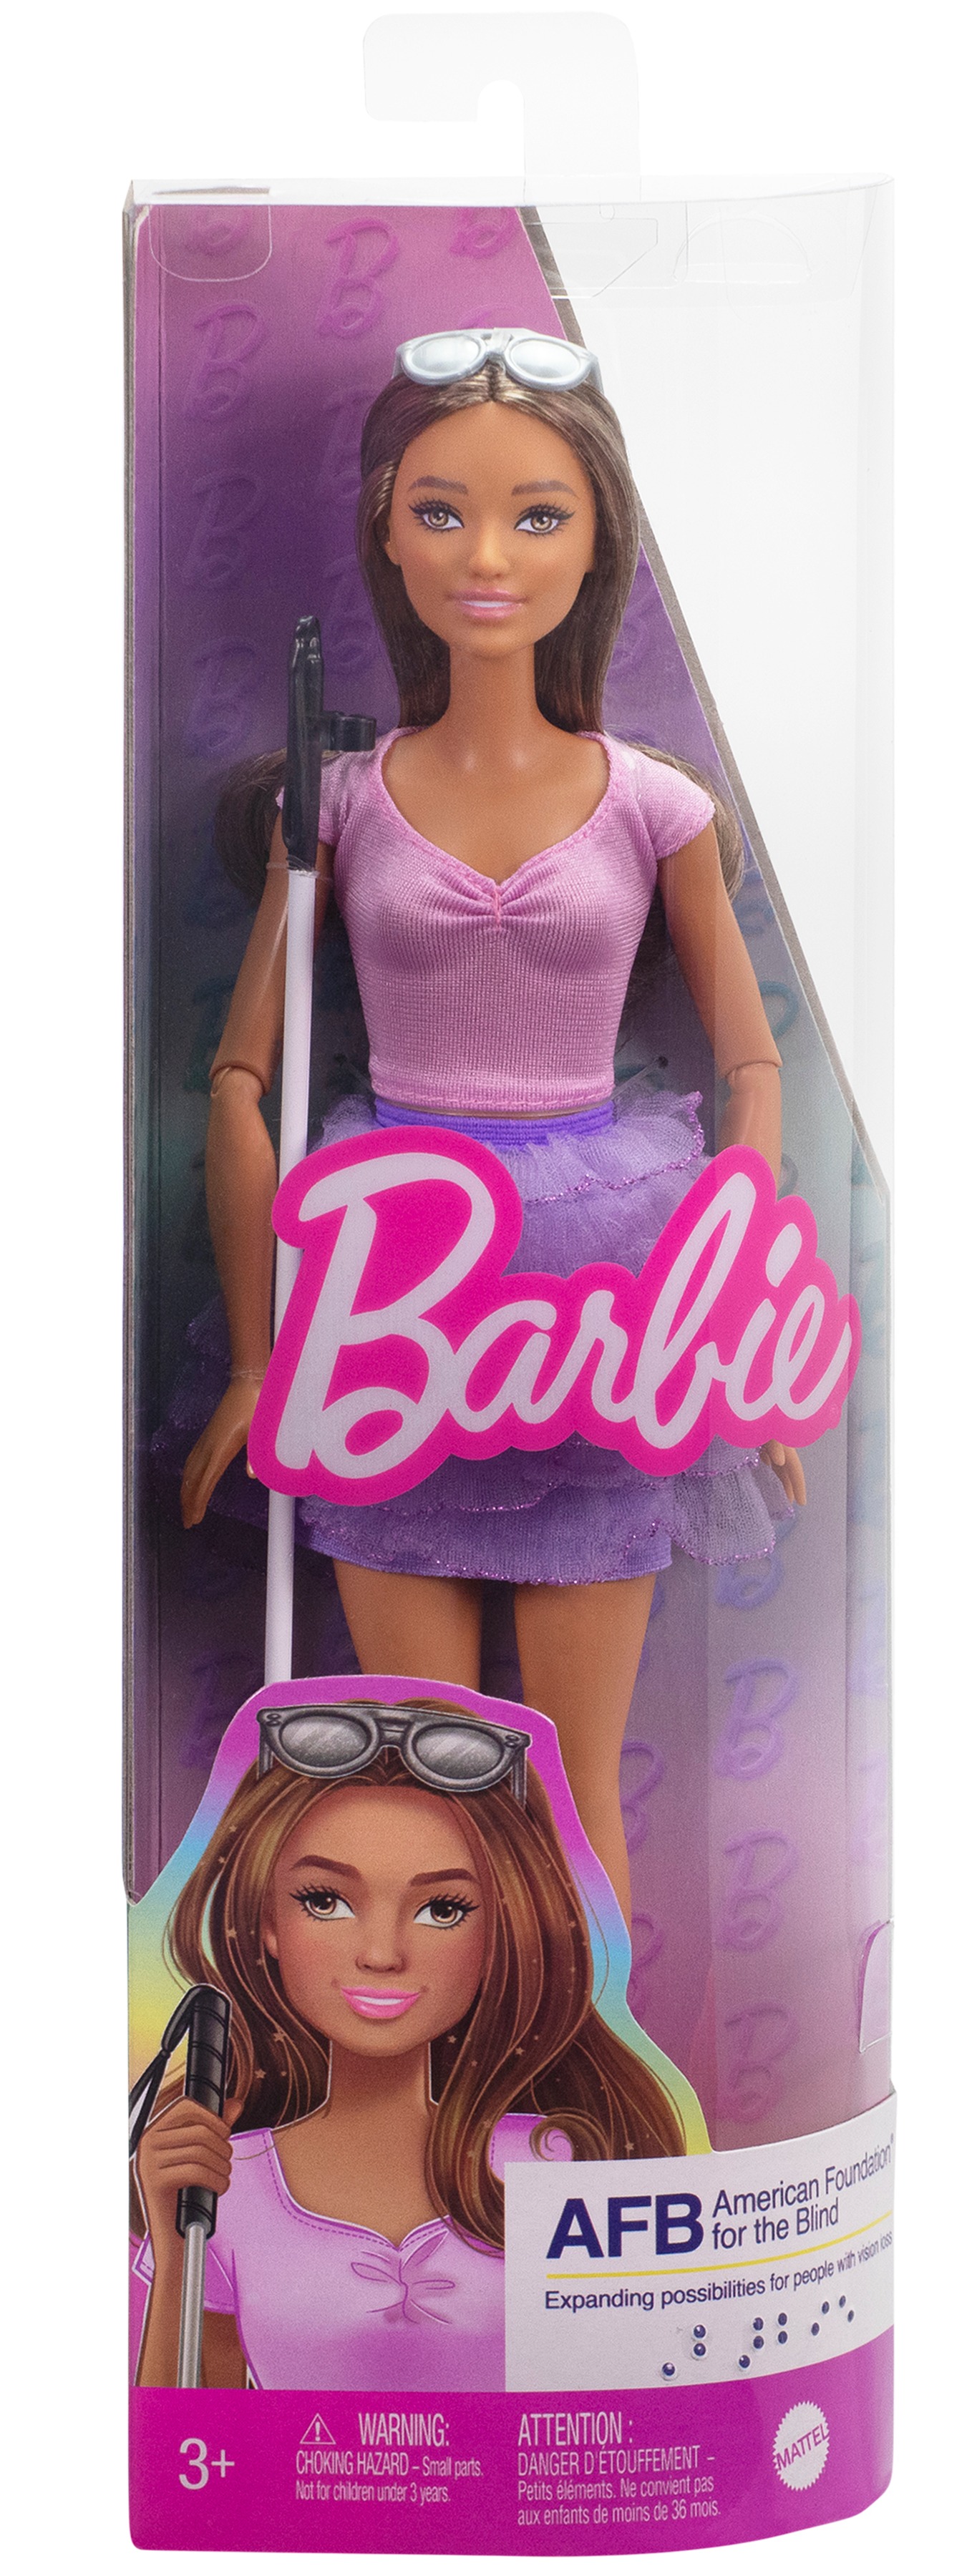 Lucy a déclaré : « Voir la poupée la plus connue au monde présenter une Barbie aveugle me donne le sentiment d'être vue »